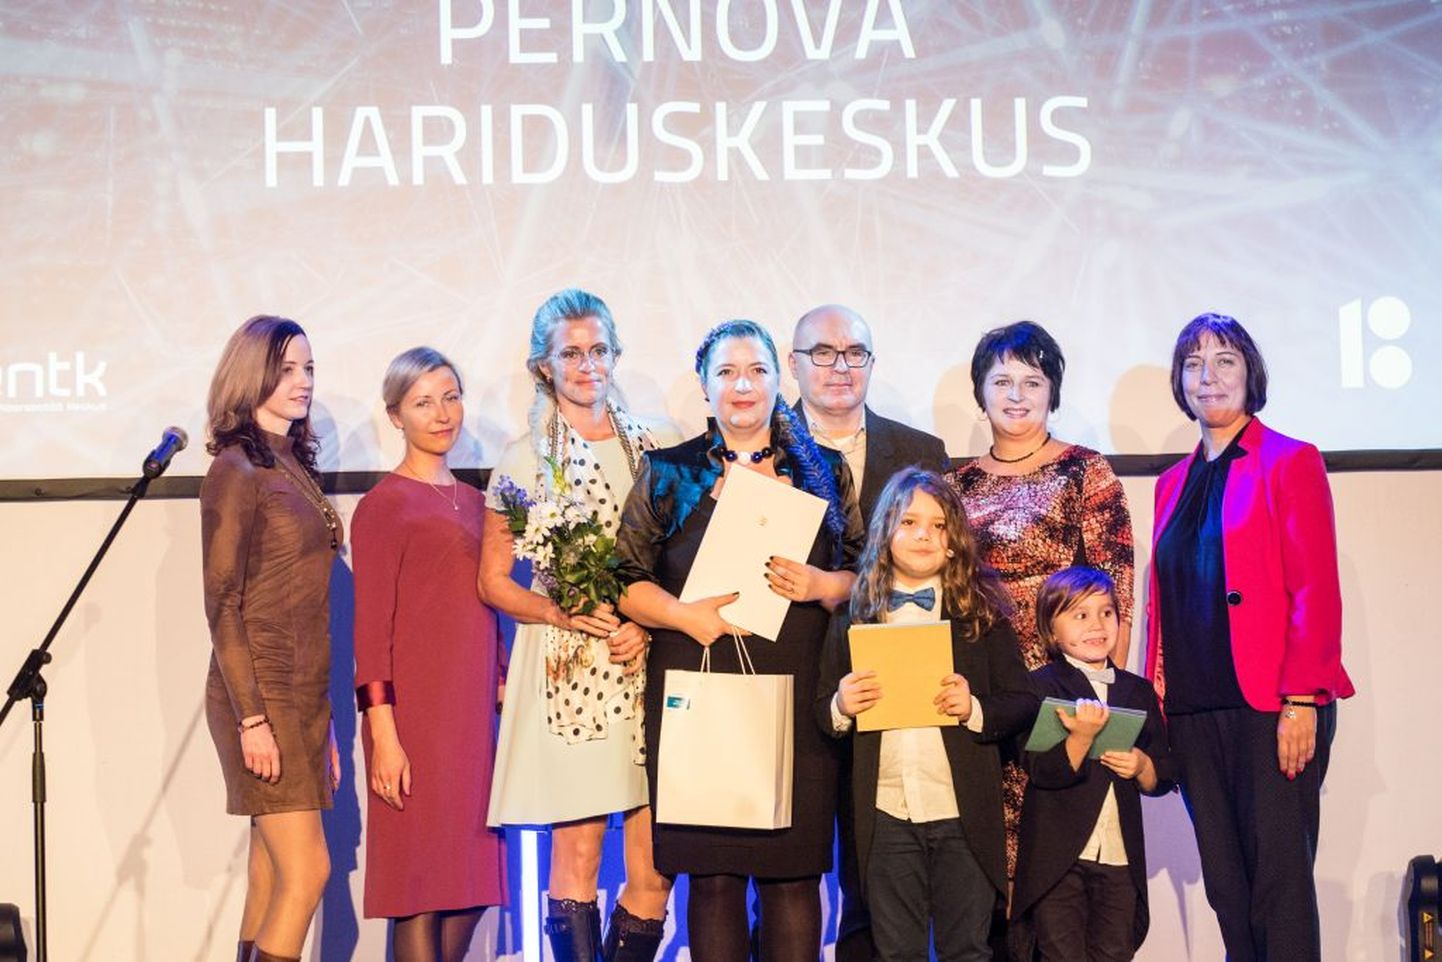 Eile õhtul Tallinnas sündmuskeskuses SpaceX toimunud üleriigilisel noortevaldkonna tunnustuskonkursil valiti aasta huvikooliks Pernova hariduskeskus